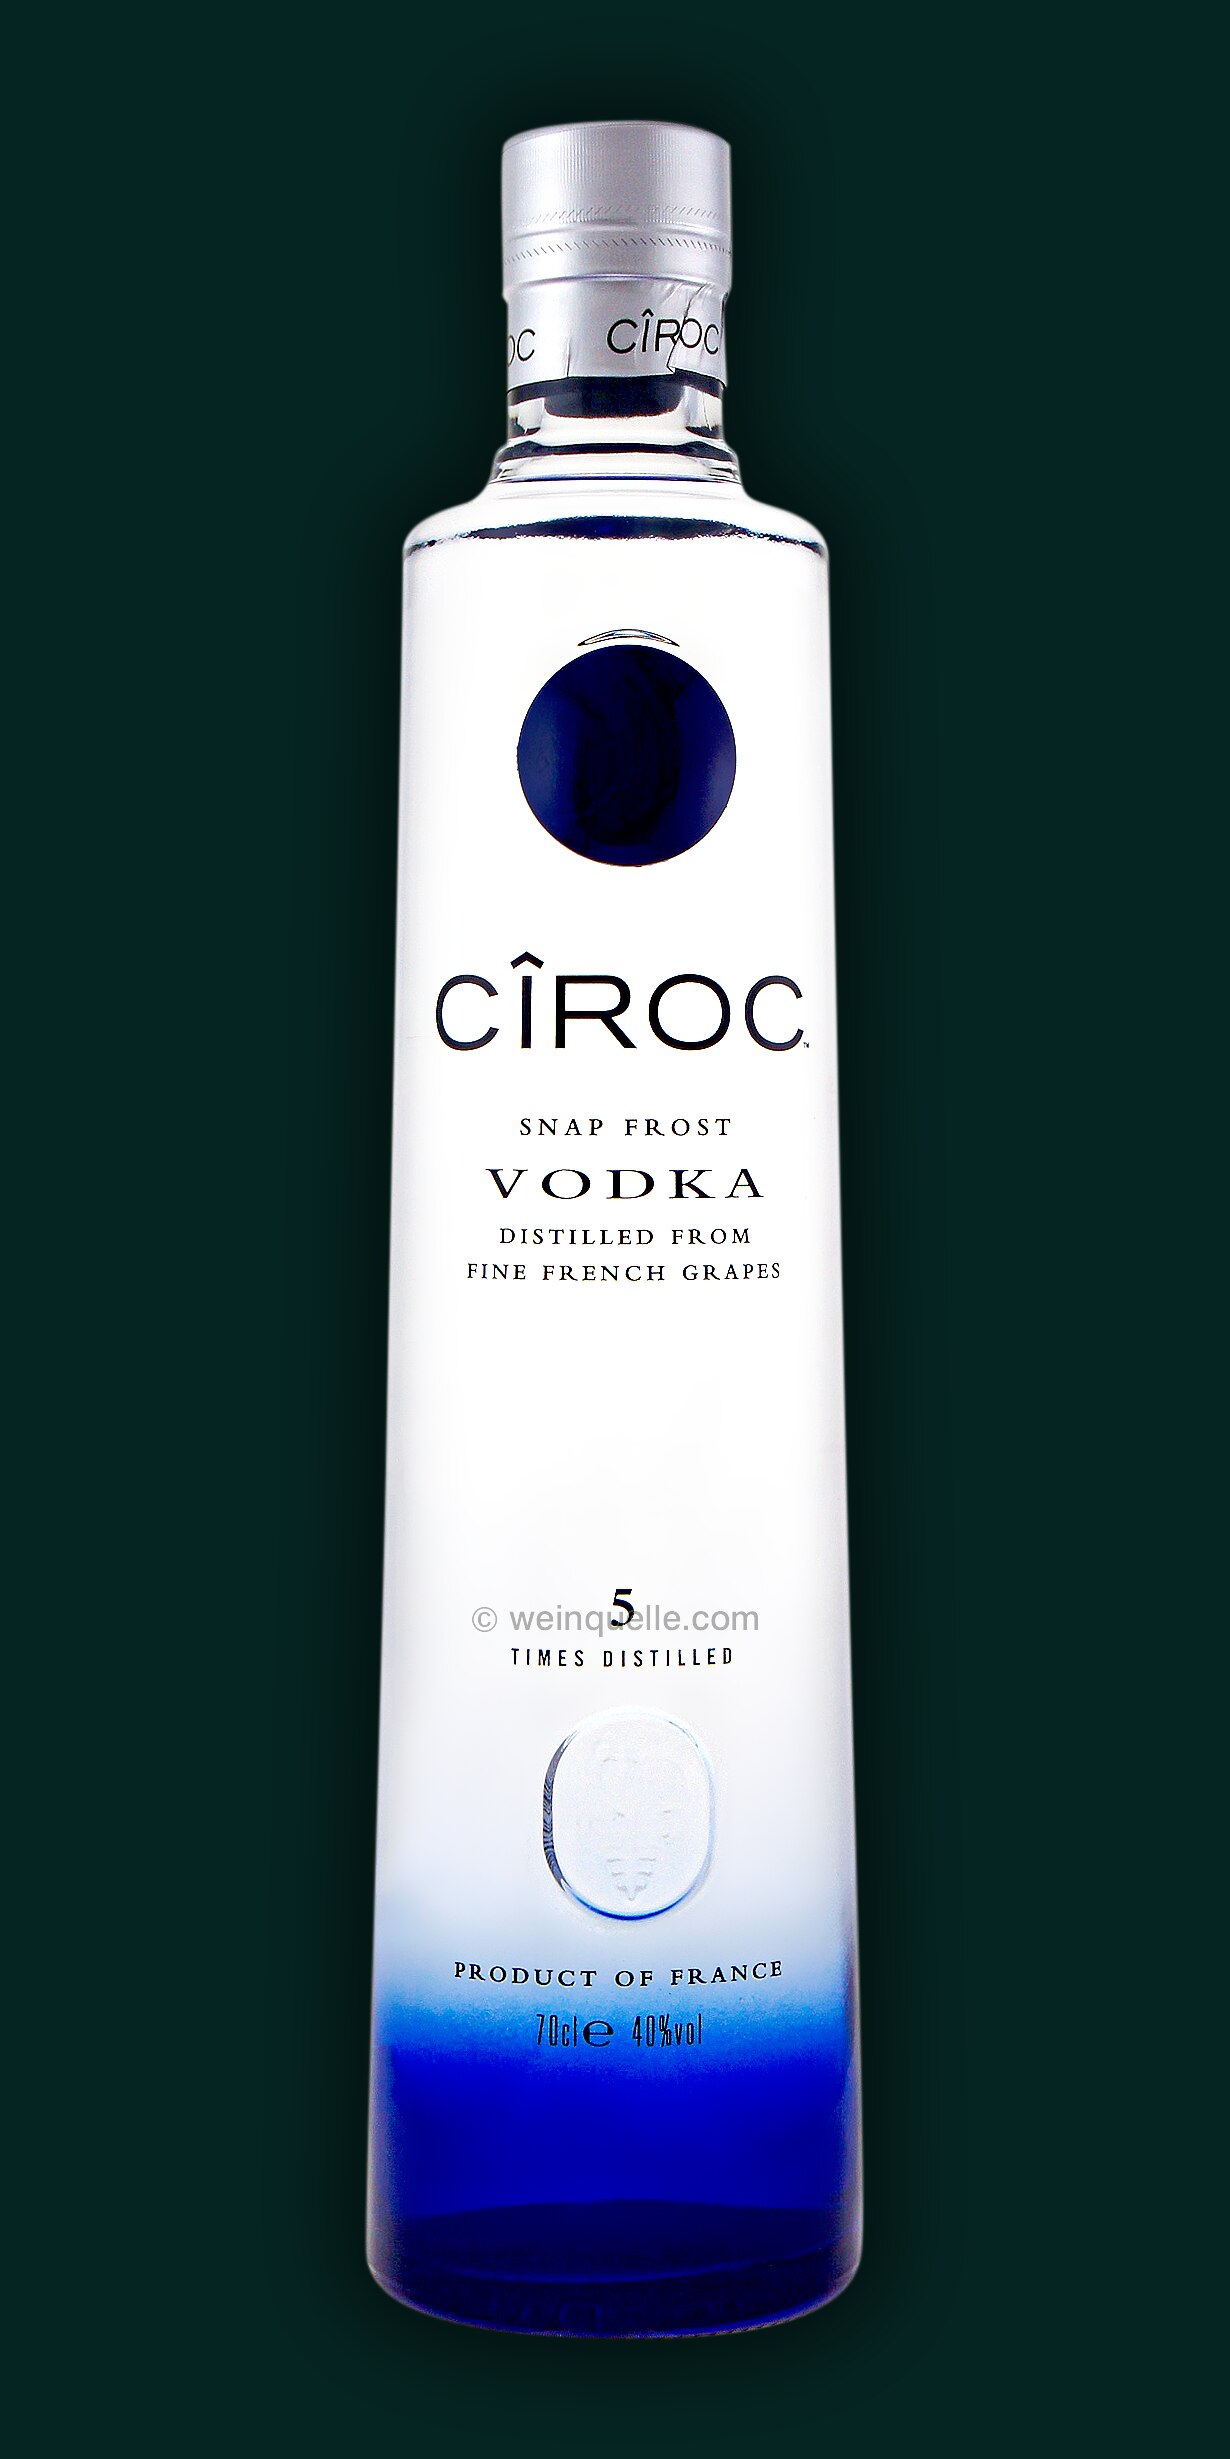 Ciroc Vodka Distilled from Fine French Grapes, 33,90 € - Weinquelle Lühmann | Vodka